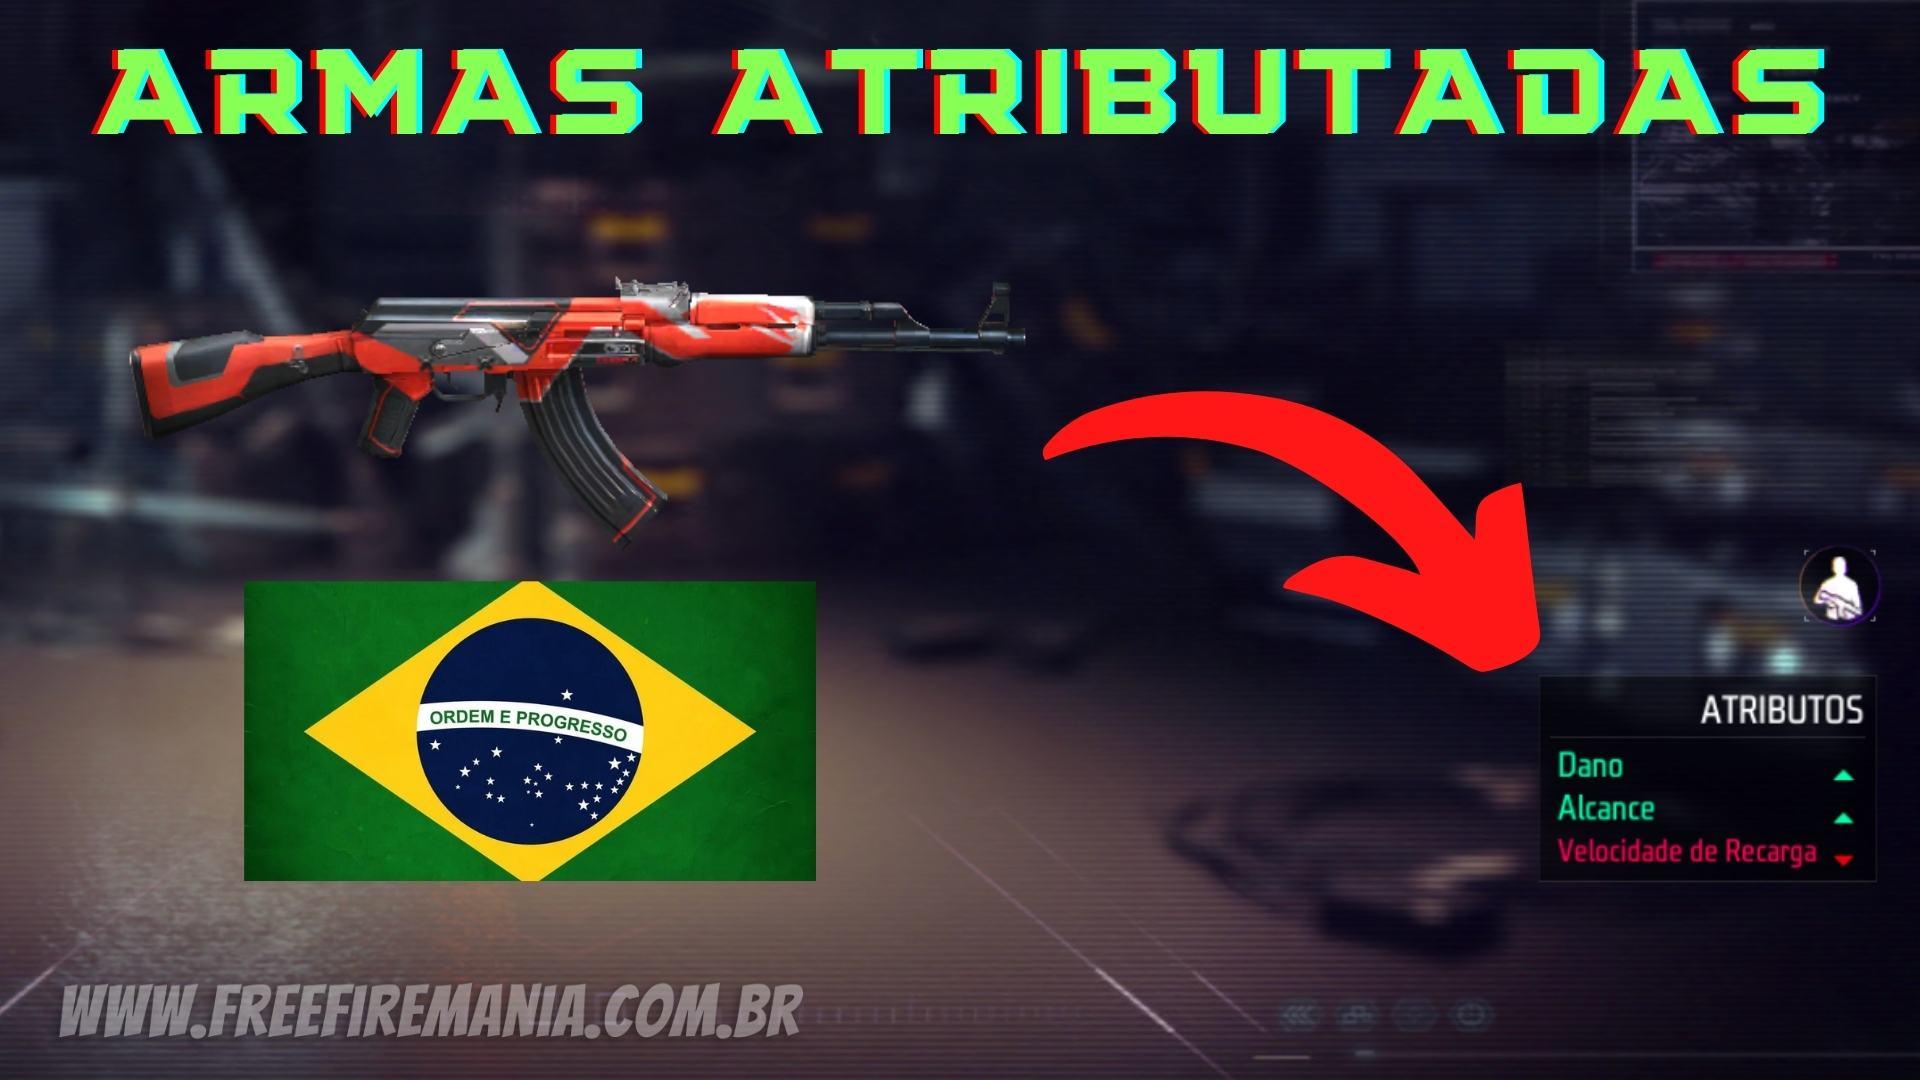 Armas atributadas chegaram ao Free Fire Brasil; saiba tudo